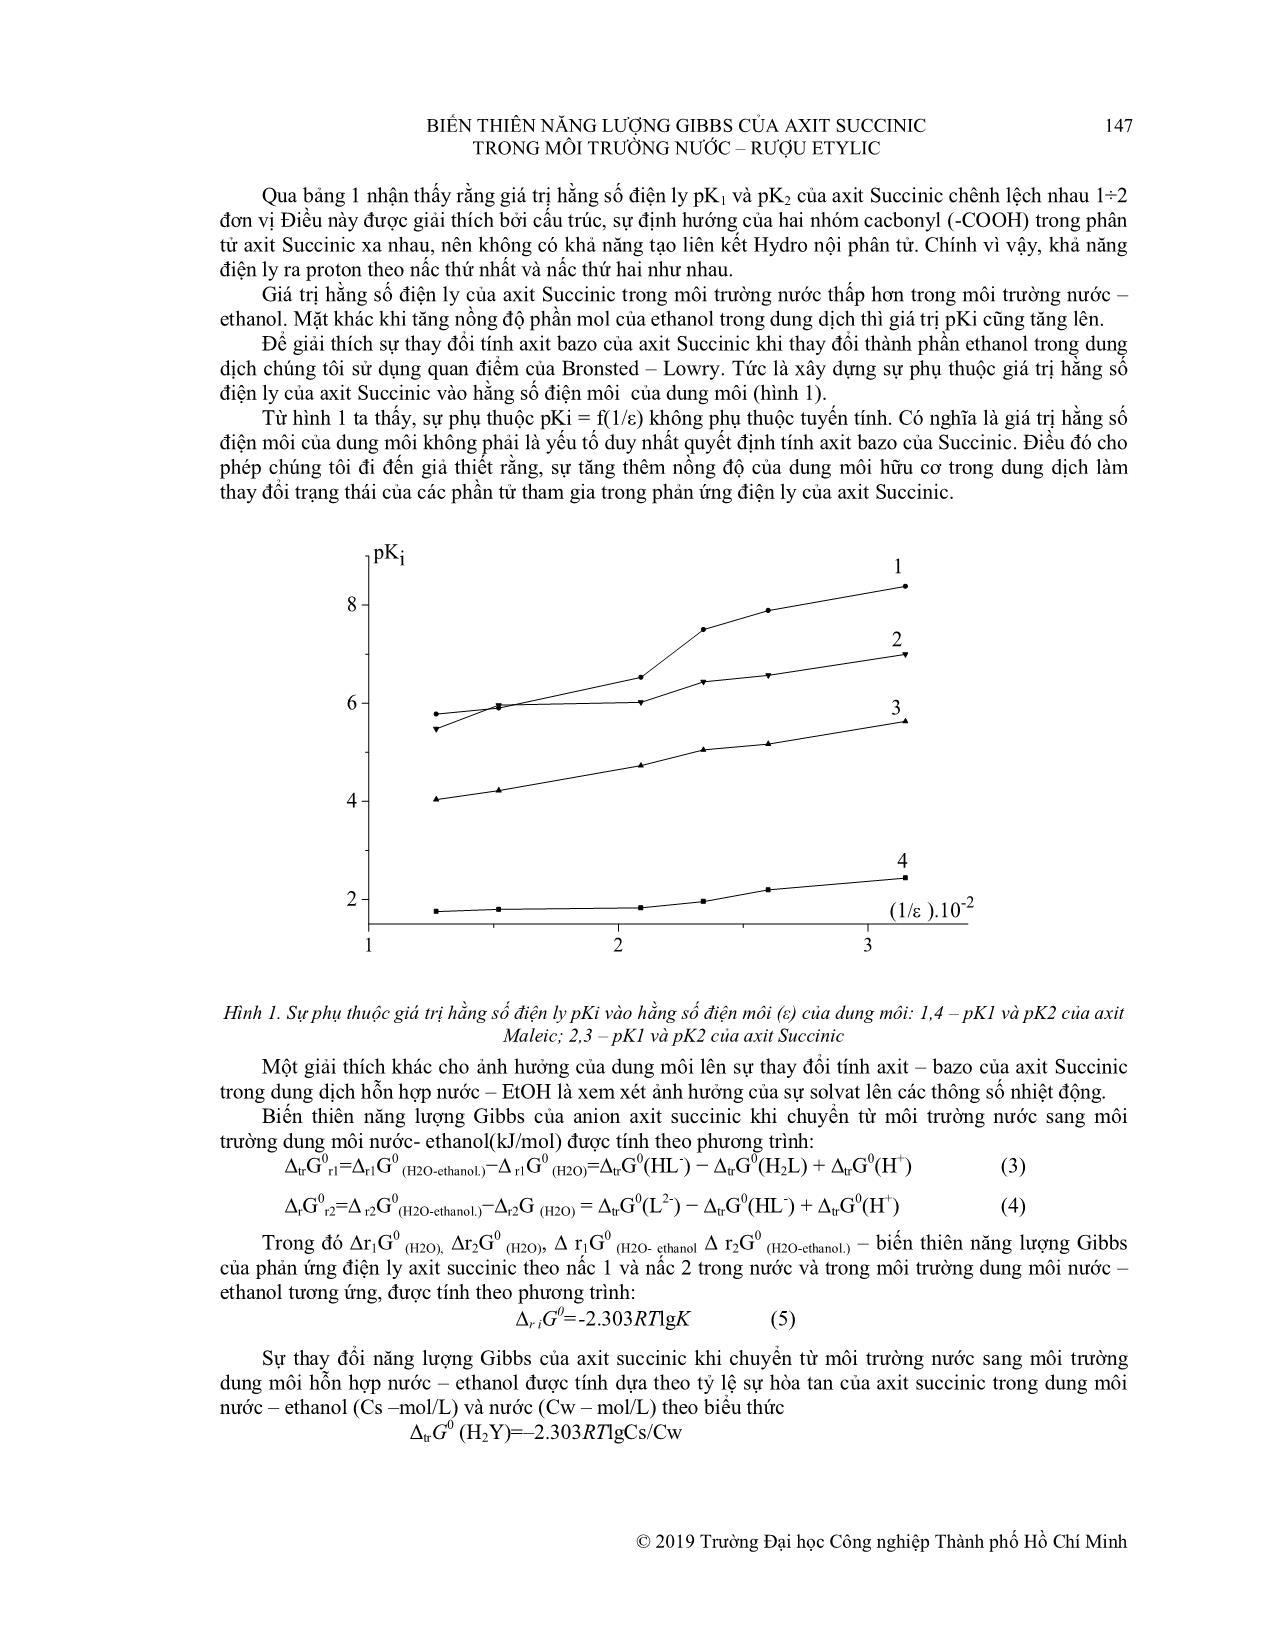 Biến thiên năng lượng gibbs của axit succinic trong môi trường nước - rượu etylic trang 4